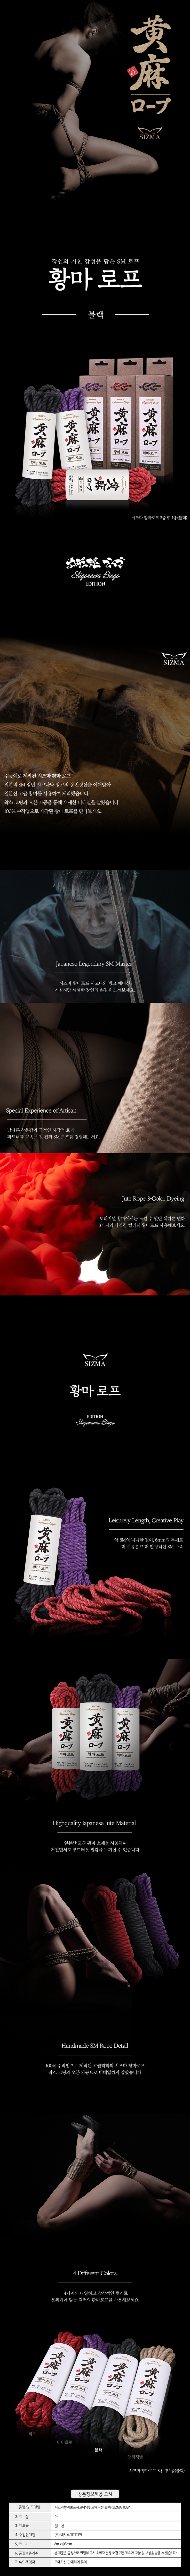 [시즈마] 시고나와빙고 에디션 황마로프 블랙